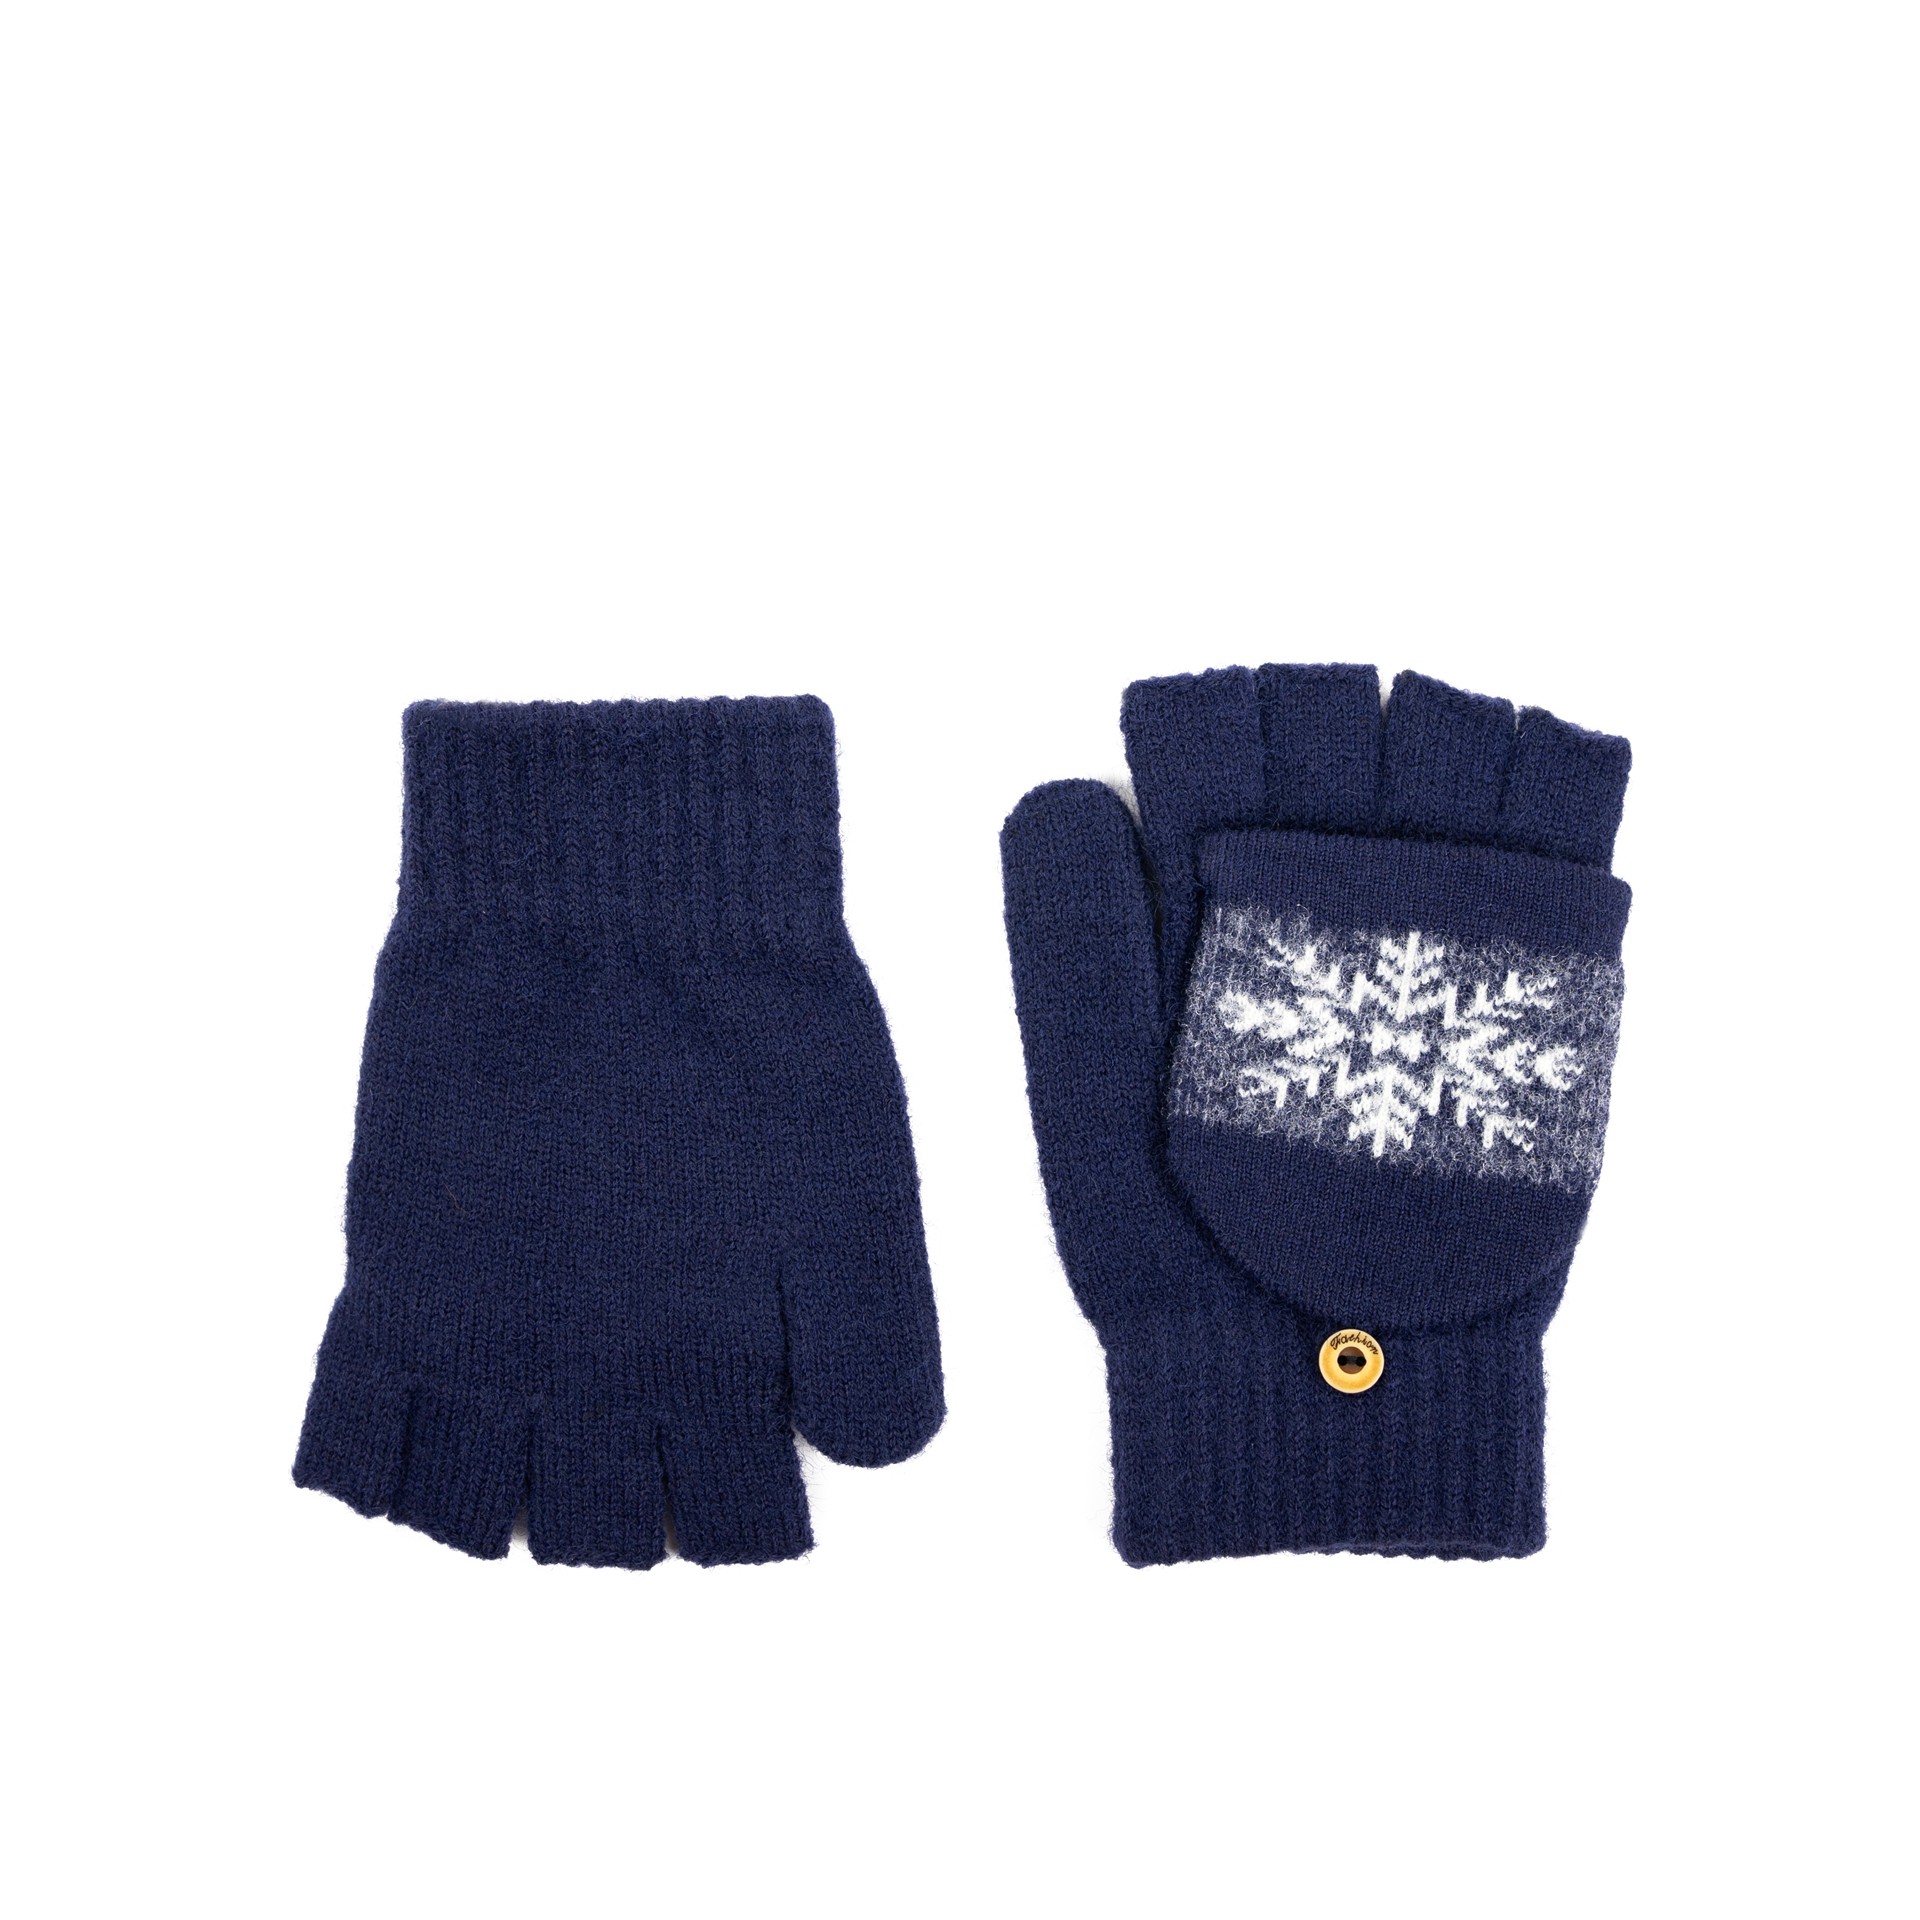 Art Of Polo Unisex's Gloves rk23369-6 White/Navy Blue